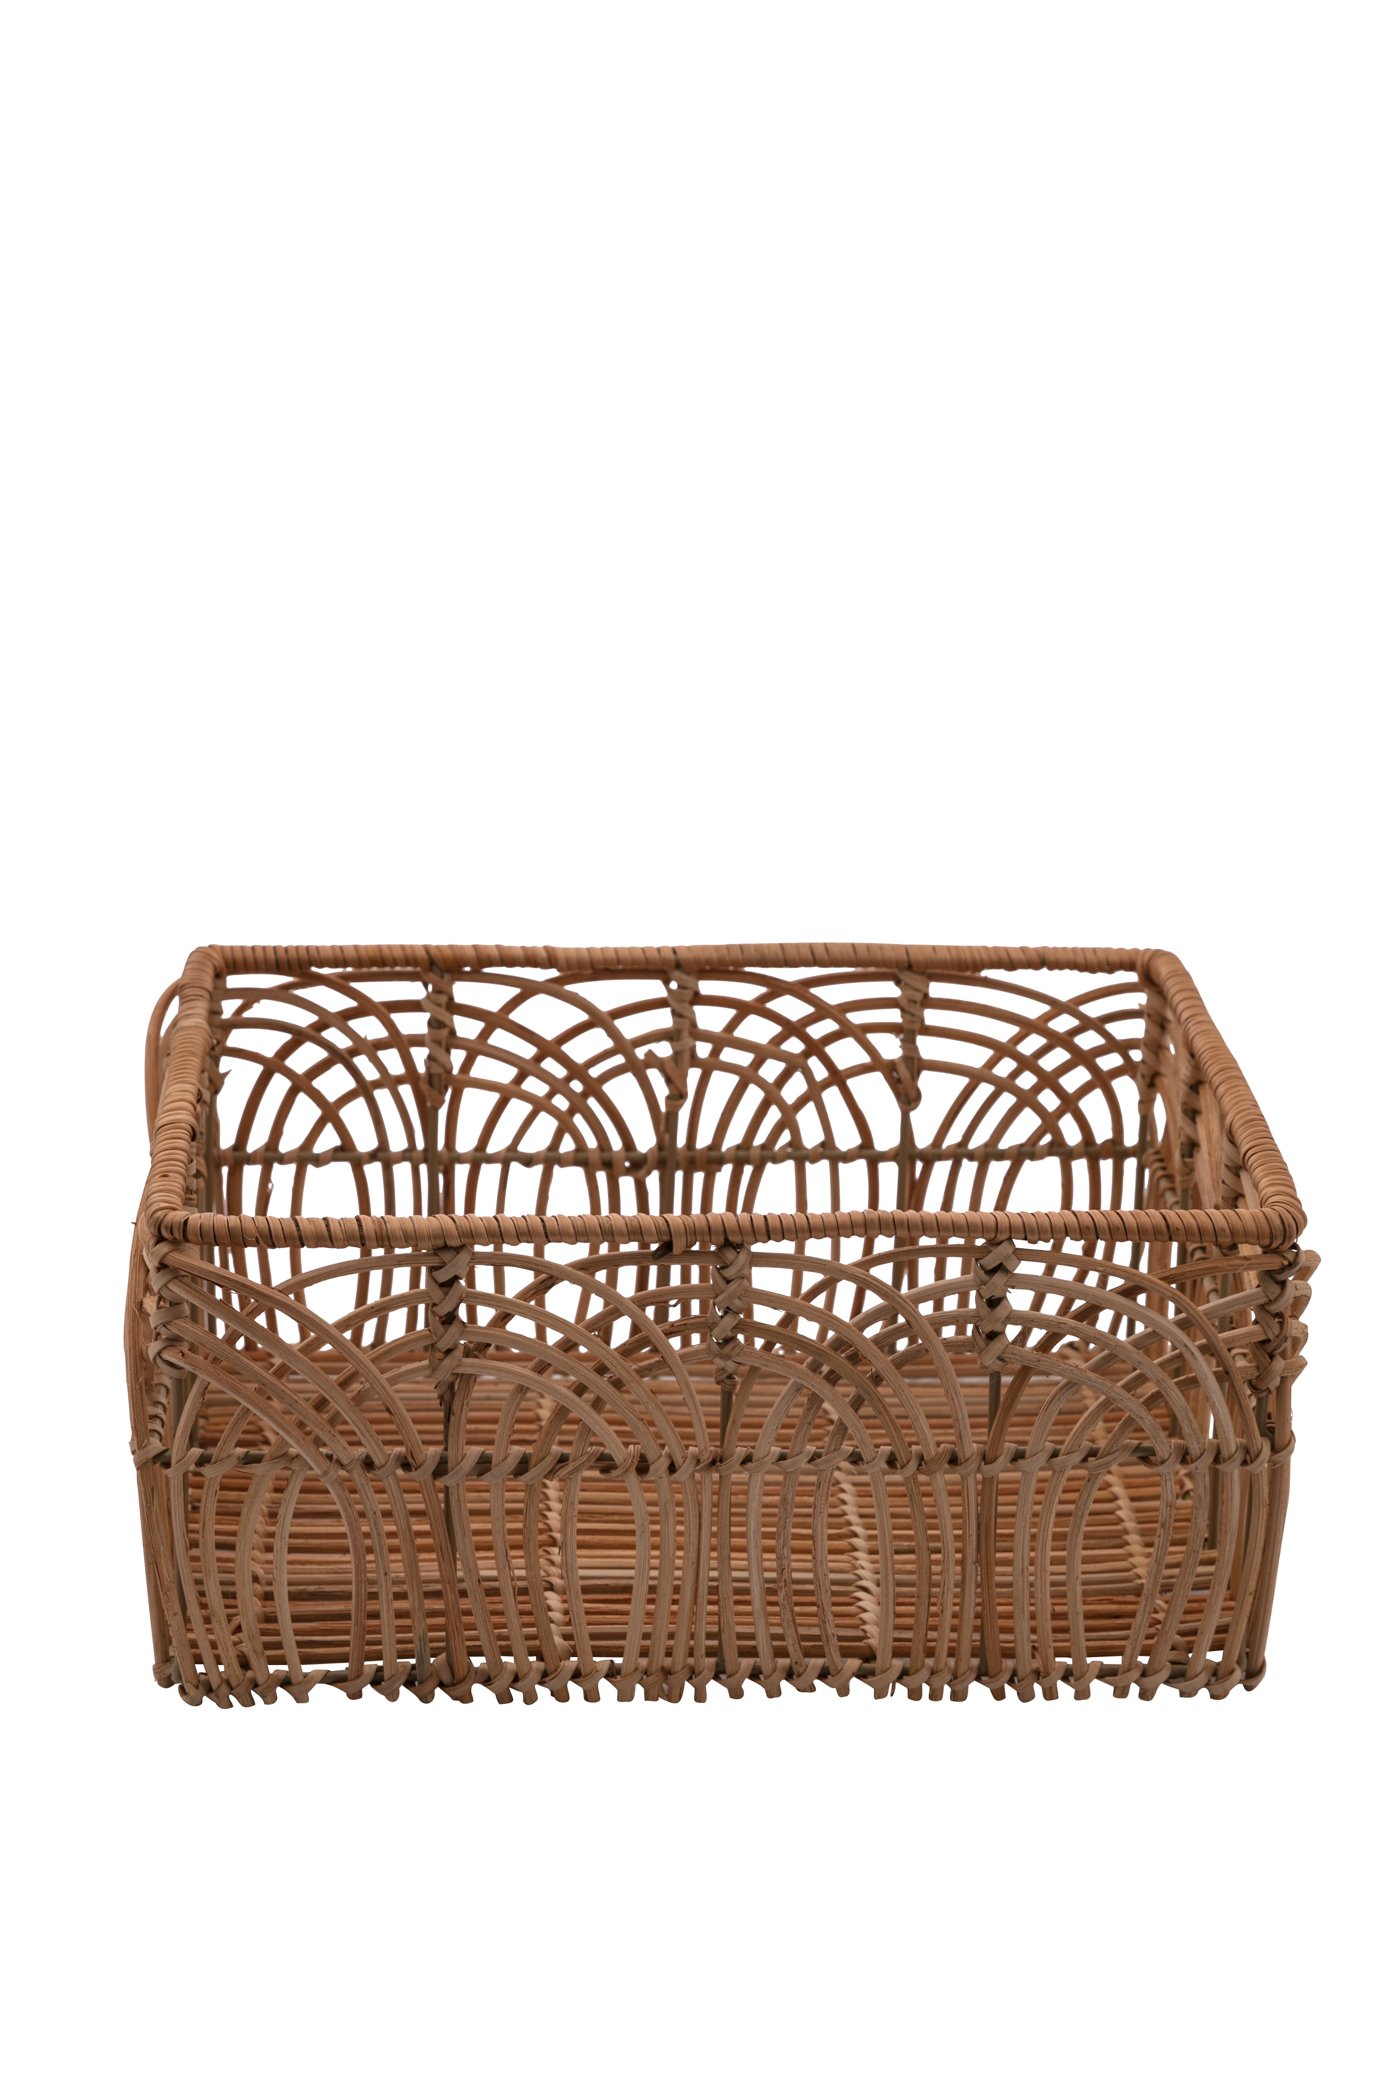 Small rattan basket Image 1